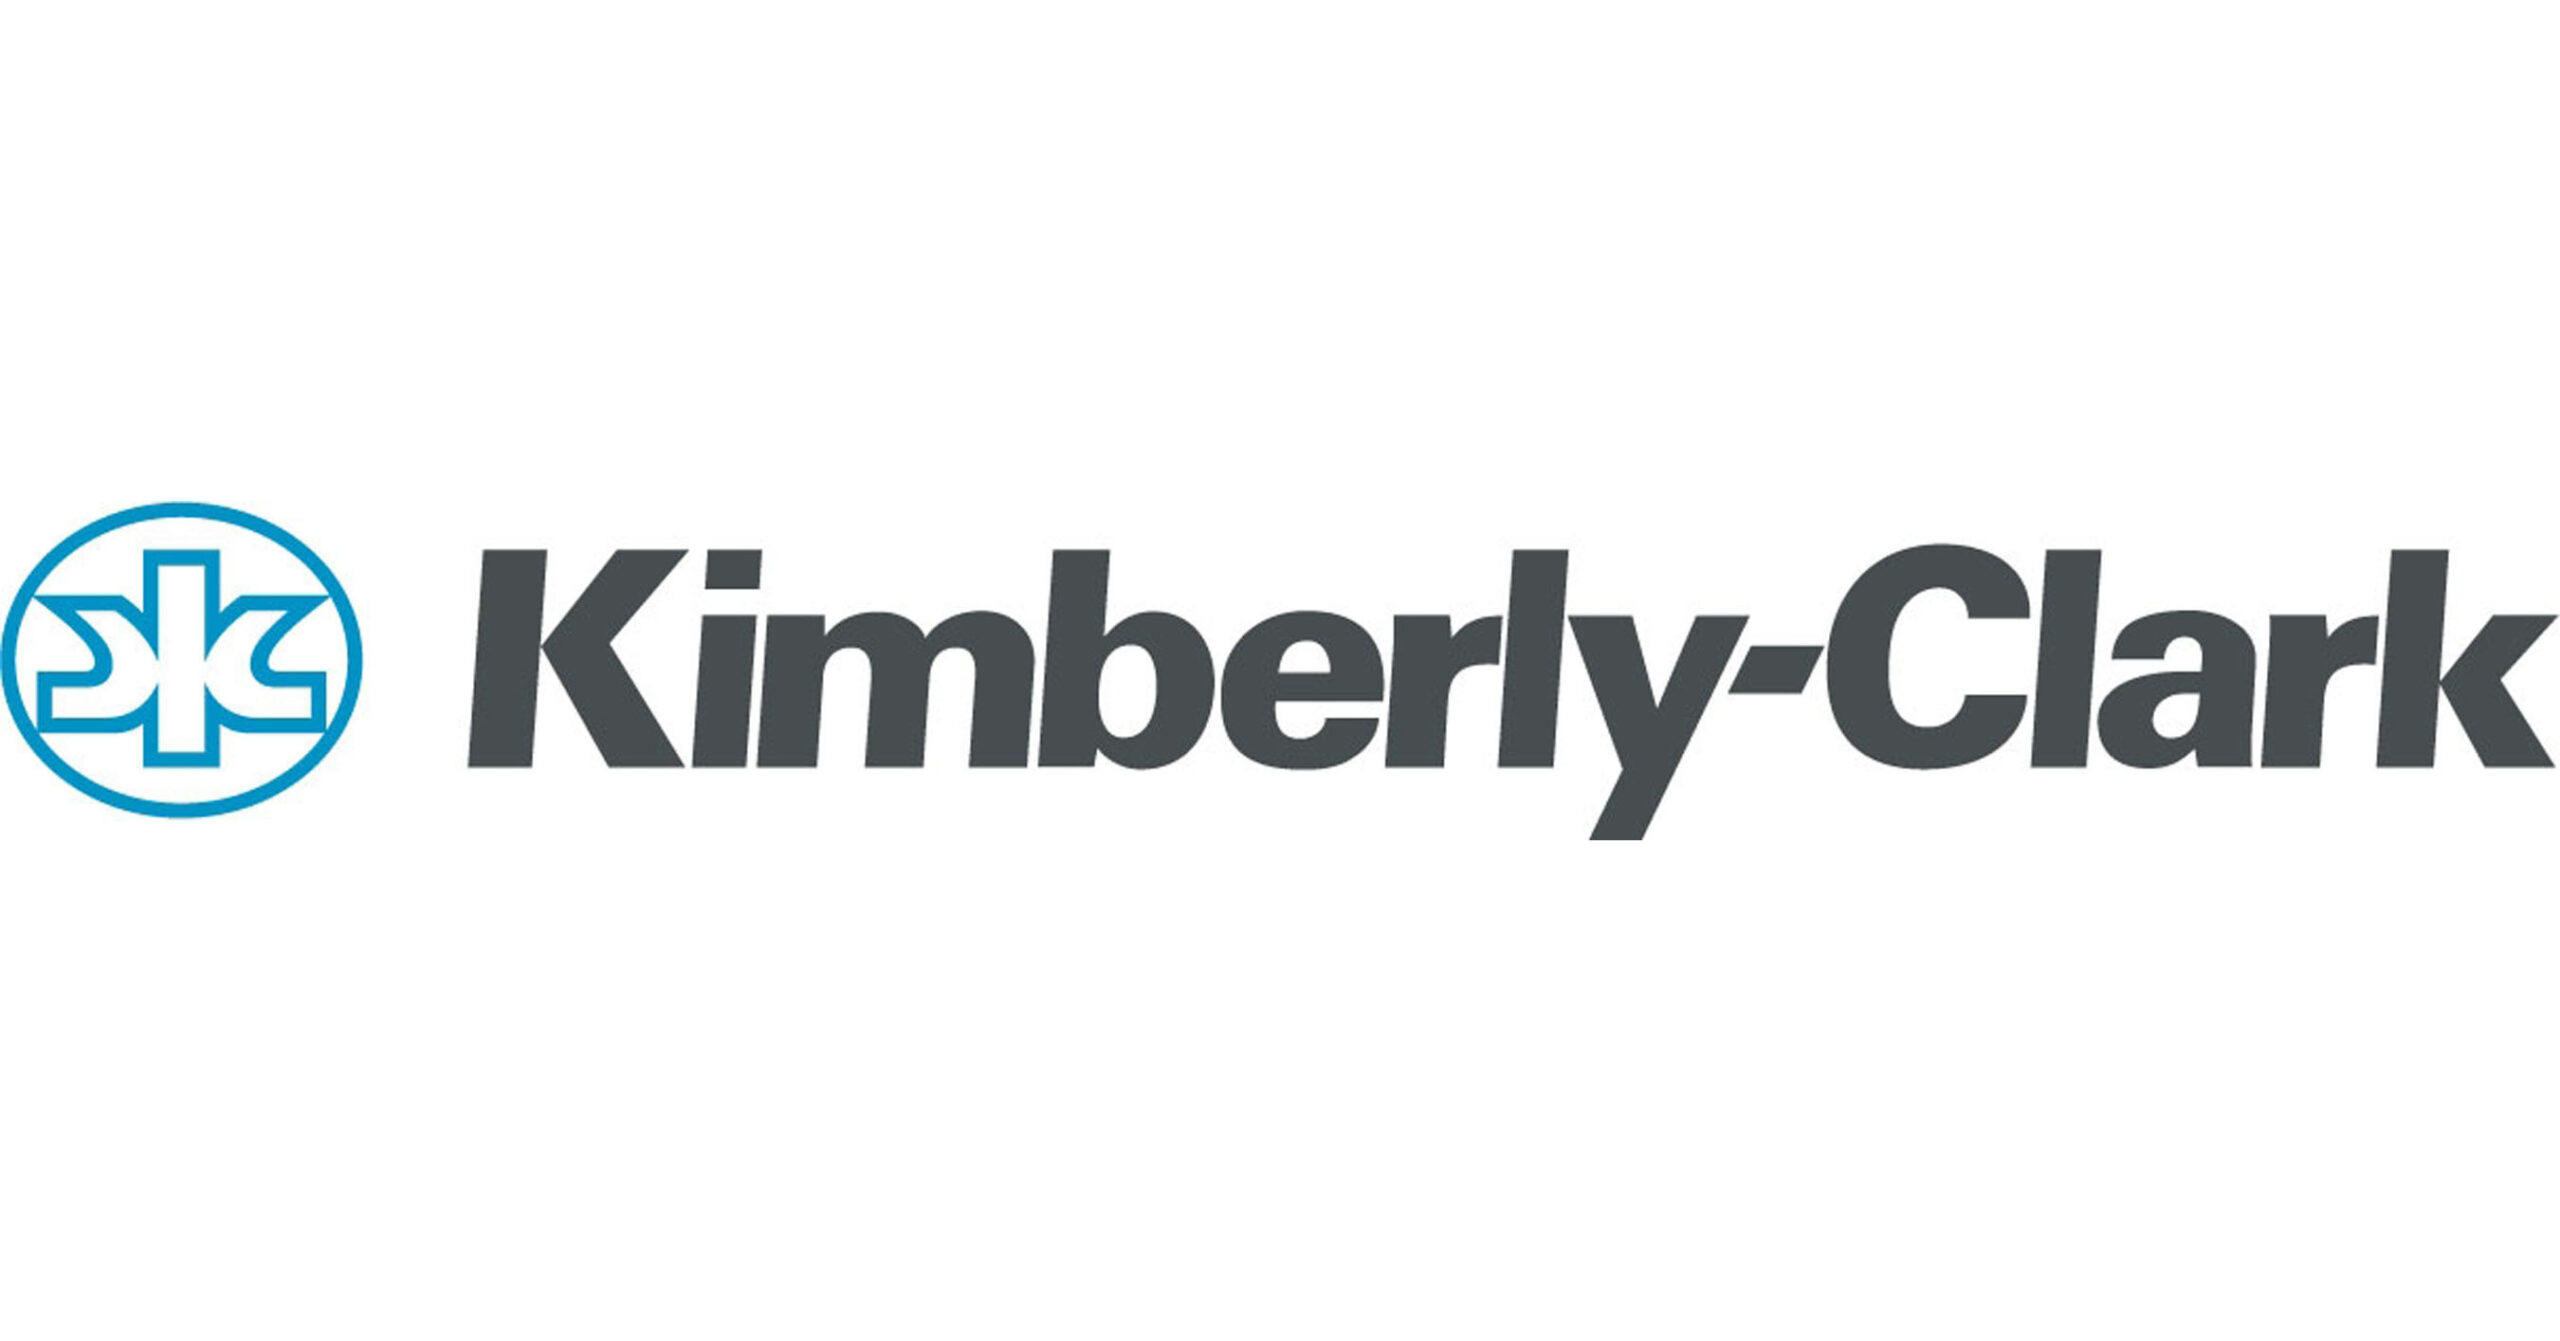 KIMBERLY-CLARK LOGO